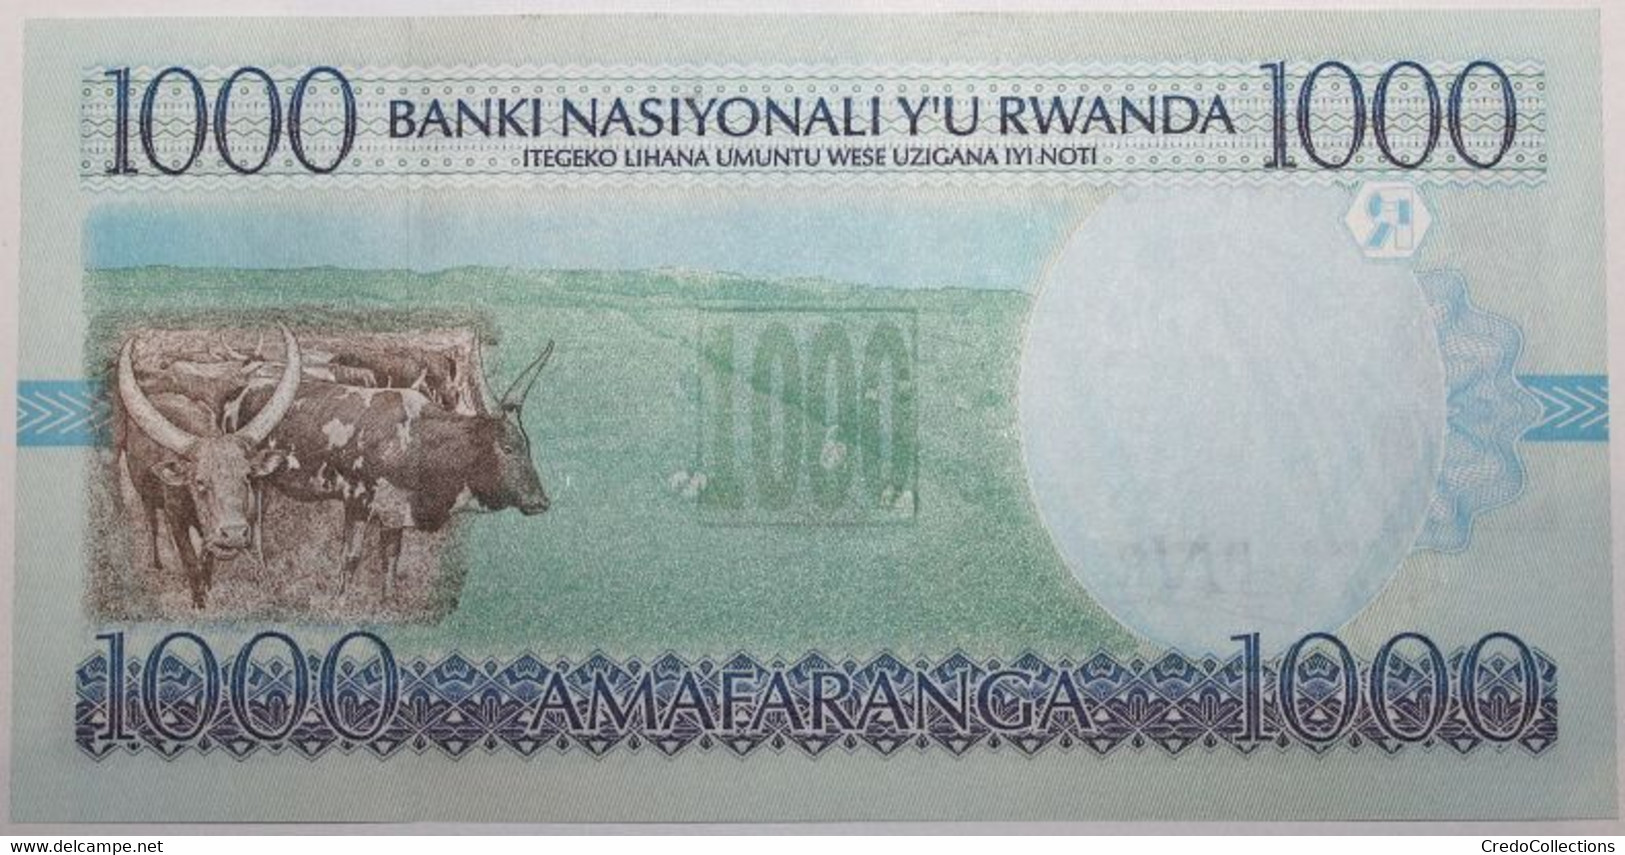 Rwanda - 1000 Francs - 1998 - PICK 27b - NEUF - Rwanda